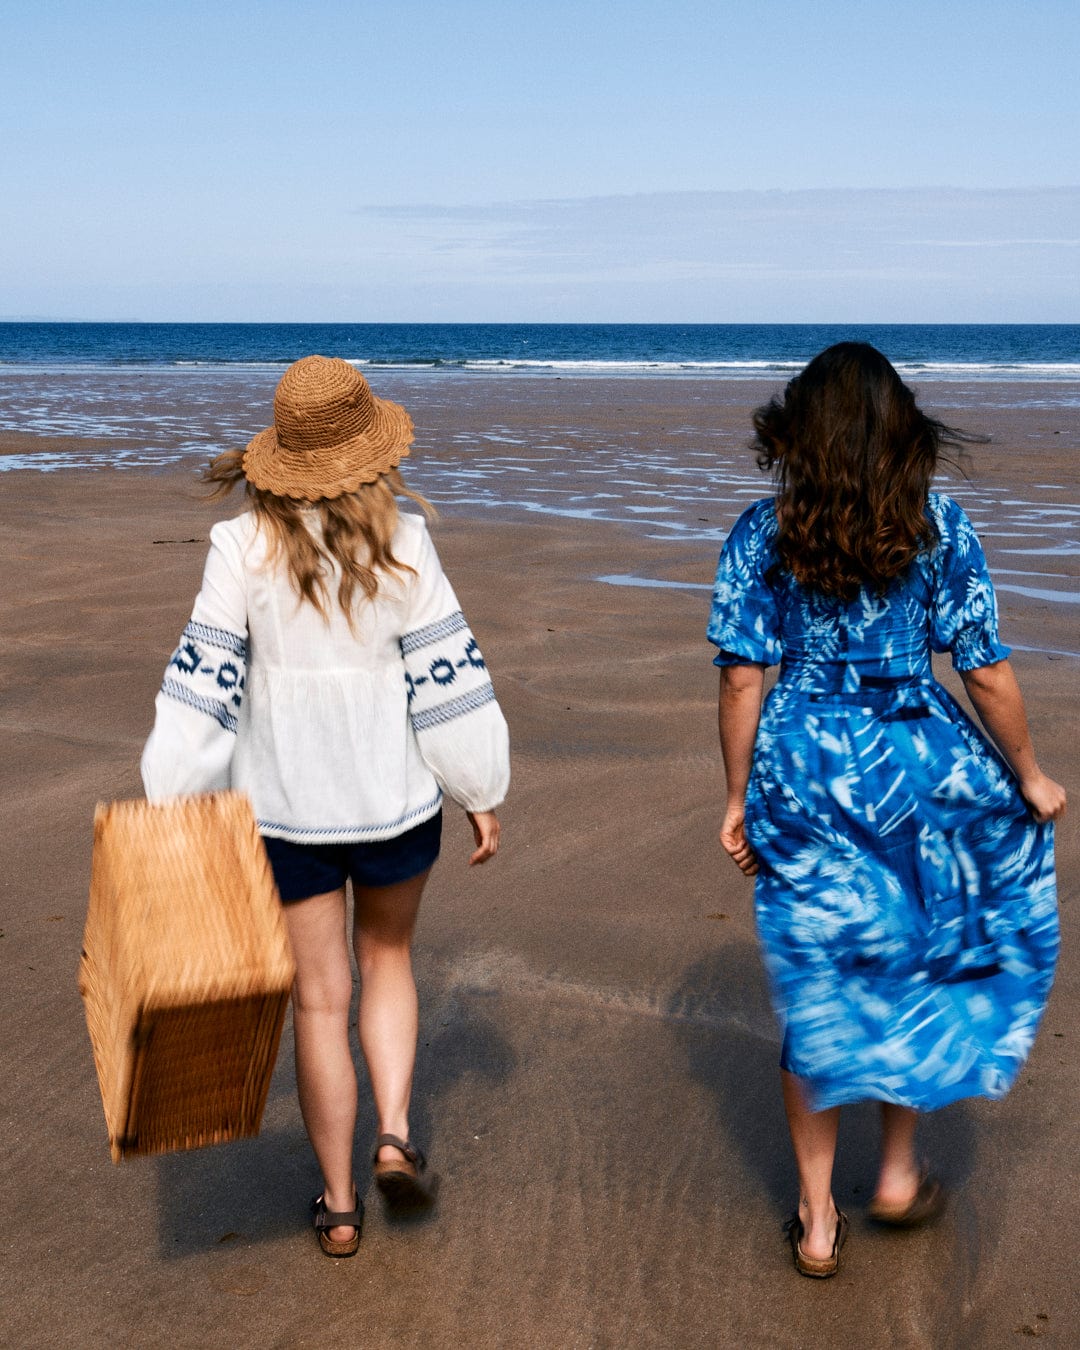 Two women walk on a sandy beach toward the ocean. One carries a wicker basket, and both wear casual beach attire, including the Saltrock Larran Cyanotype - Midi Woven Dress - Blue.